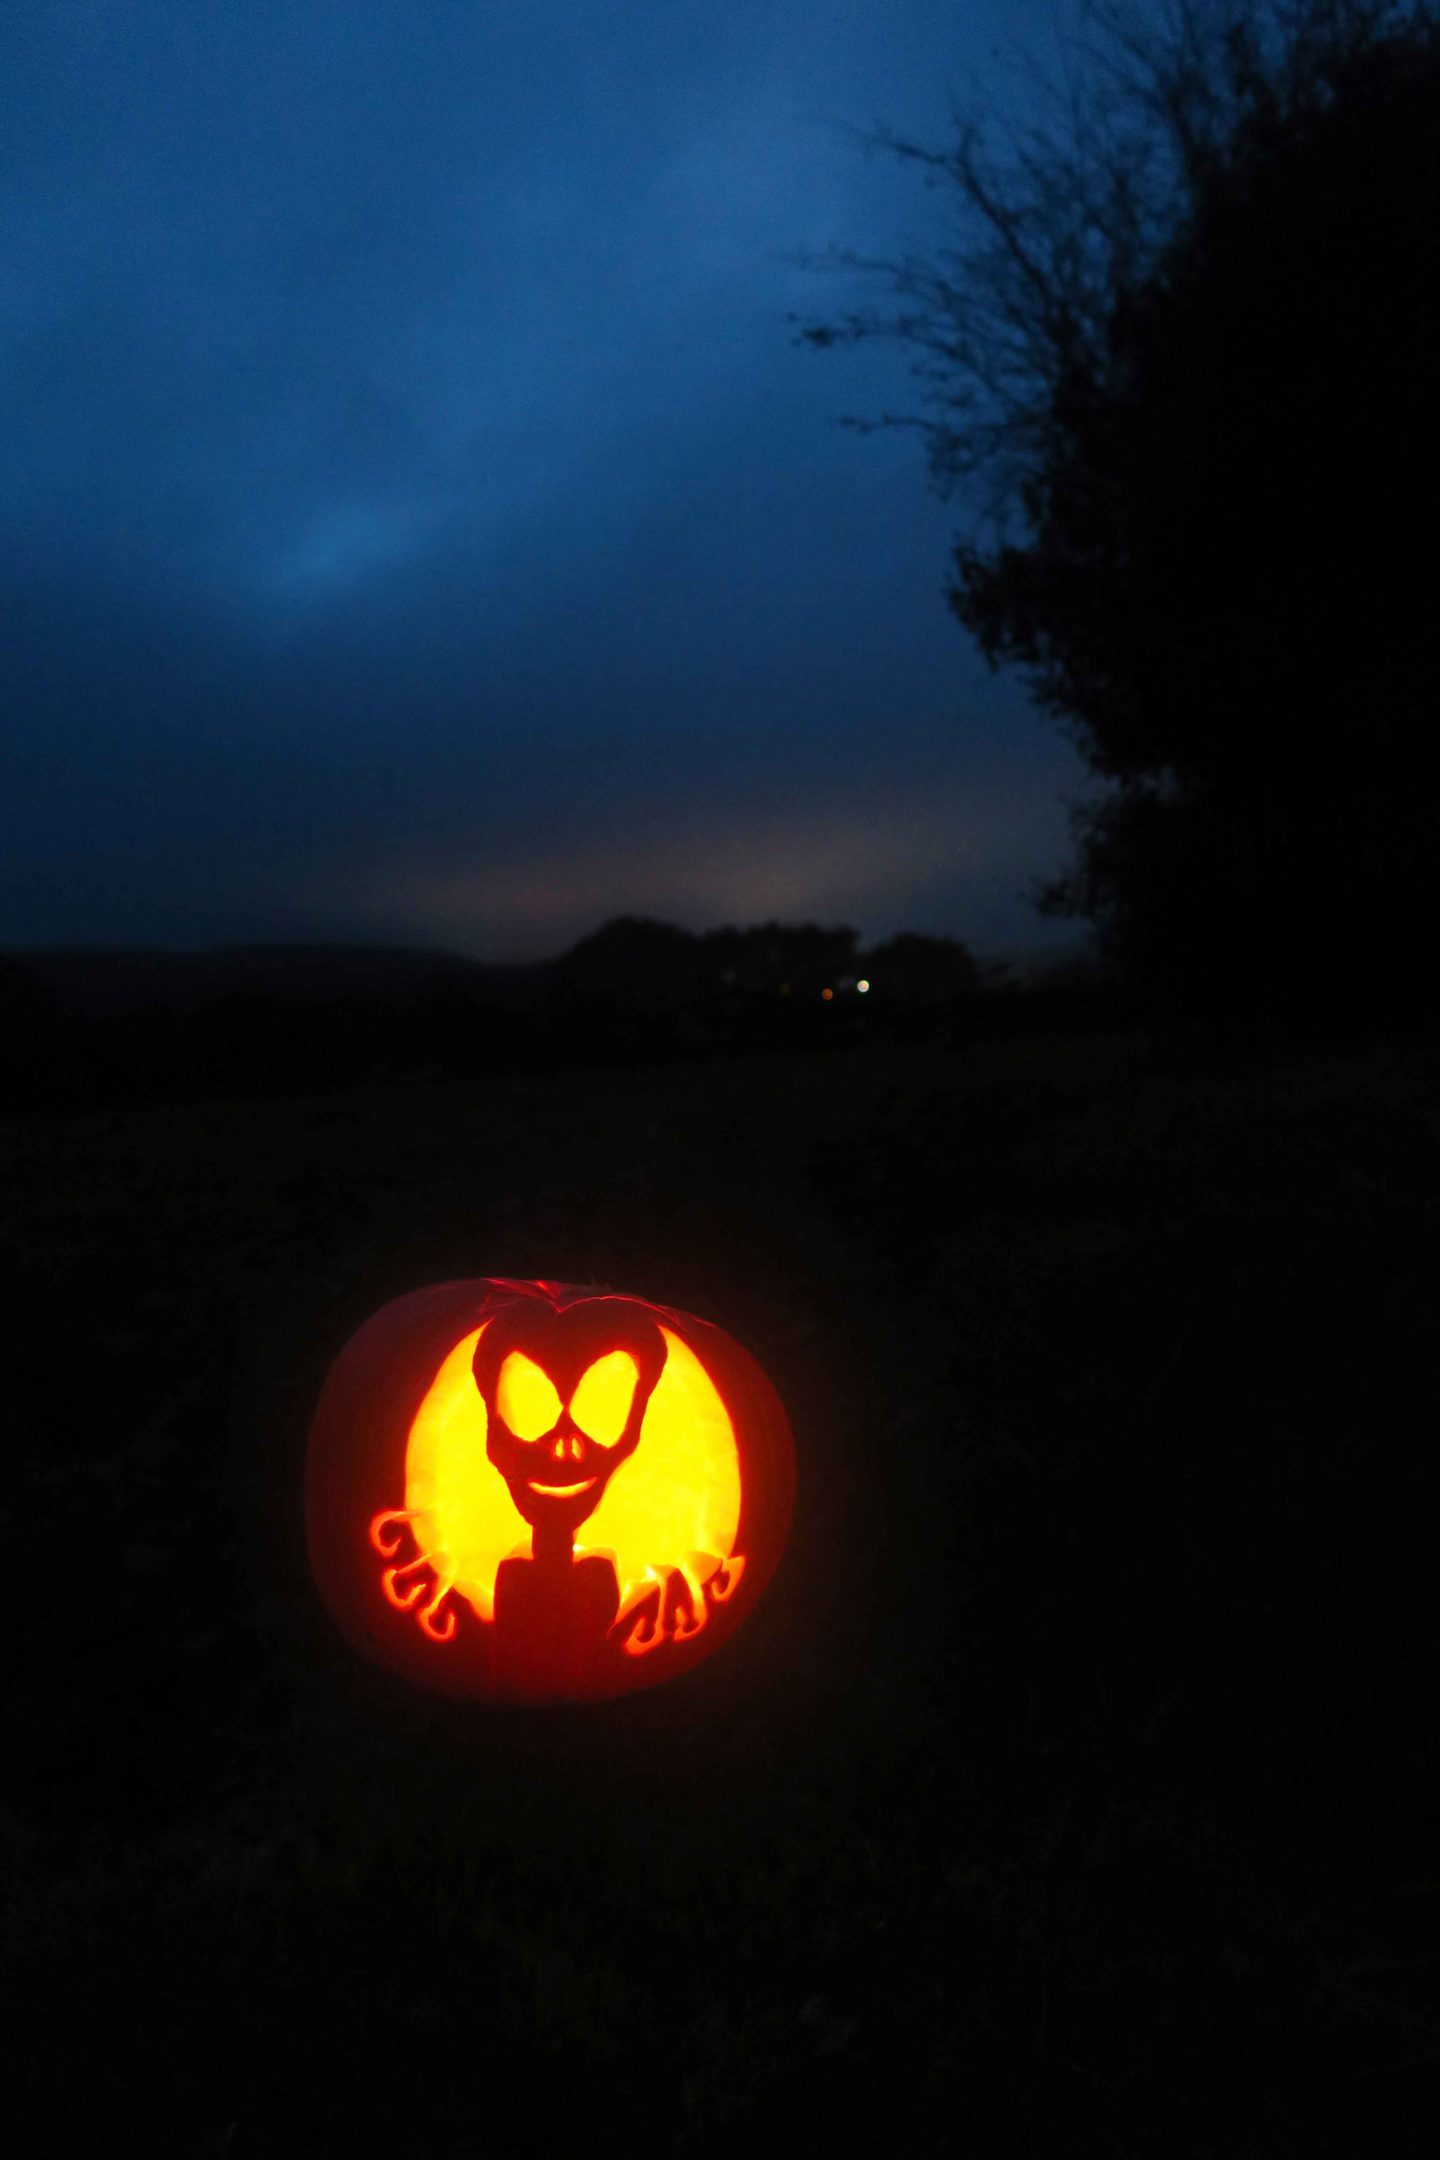 alien pumpkin carving at night